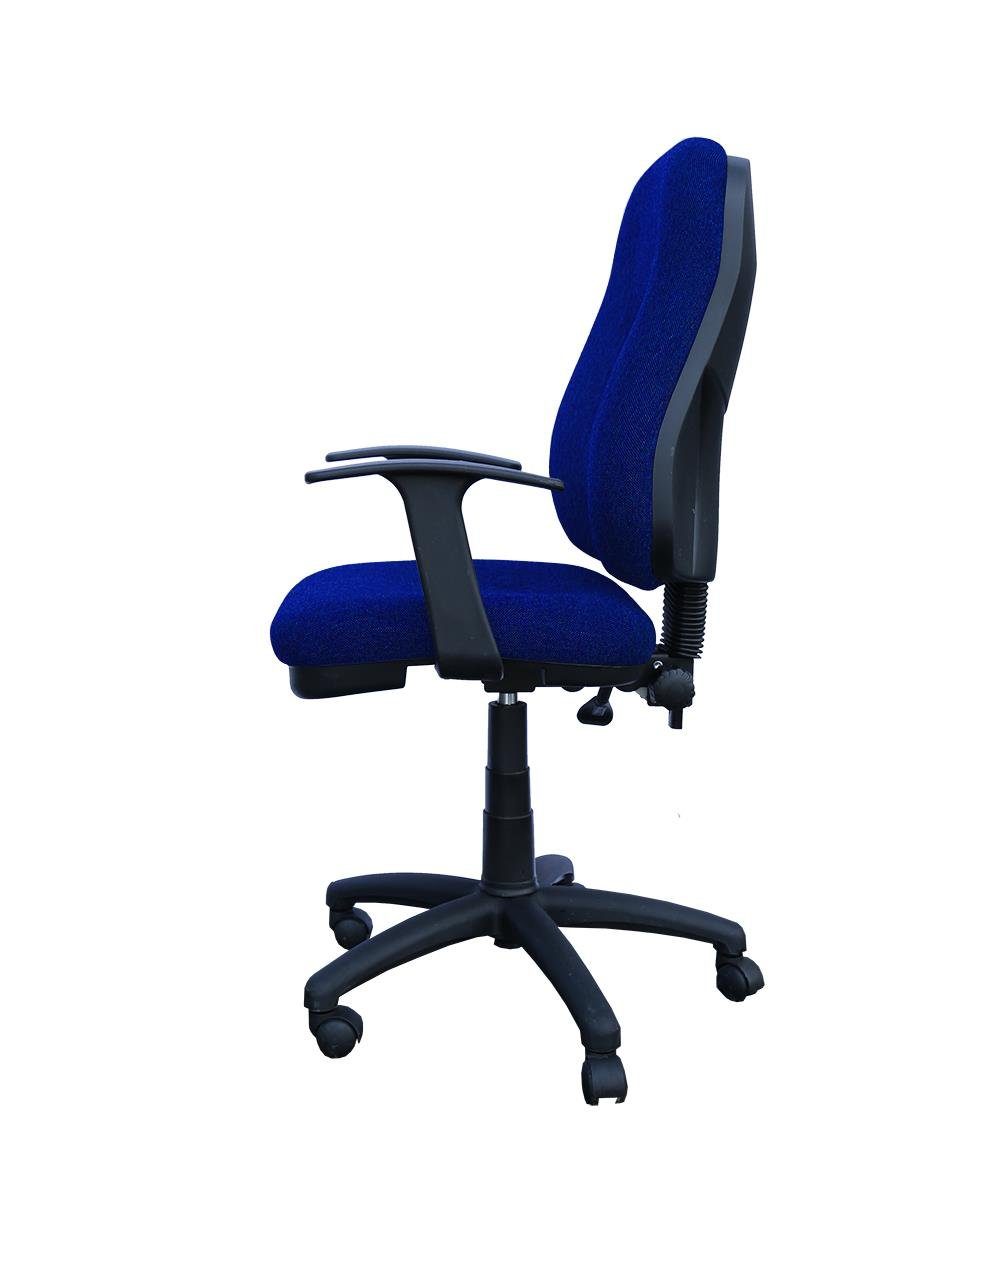 Bandscheibensitz Armlehnen) geformt Steelboxx Bürodrehstuhl Drehstuhl (Bürodrehstuhl ergonomisch mit blau